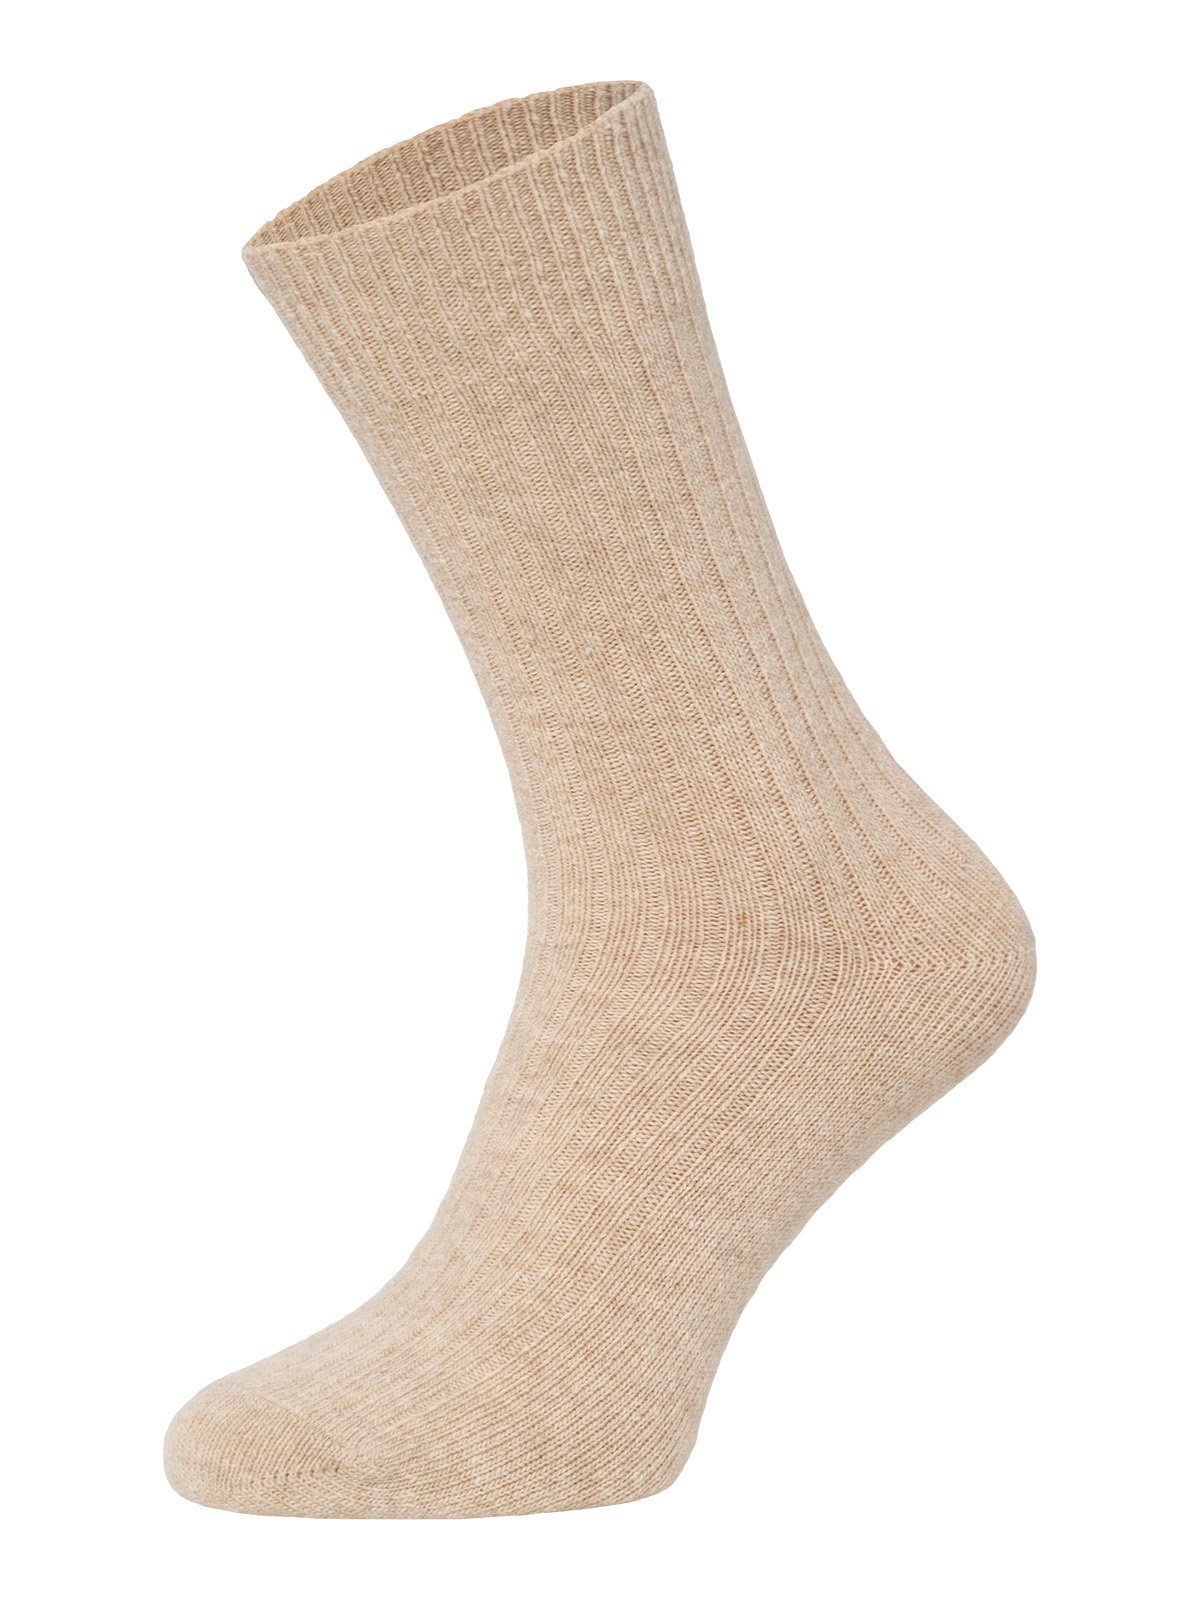 HomeOfSocks Socken Dünne Bunte Wollsocken mit 72% Wollanteil Hochwertige Uni Wollsocken Dünn Bunt Druckarm Beige